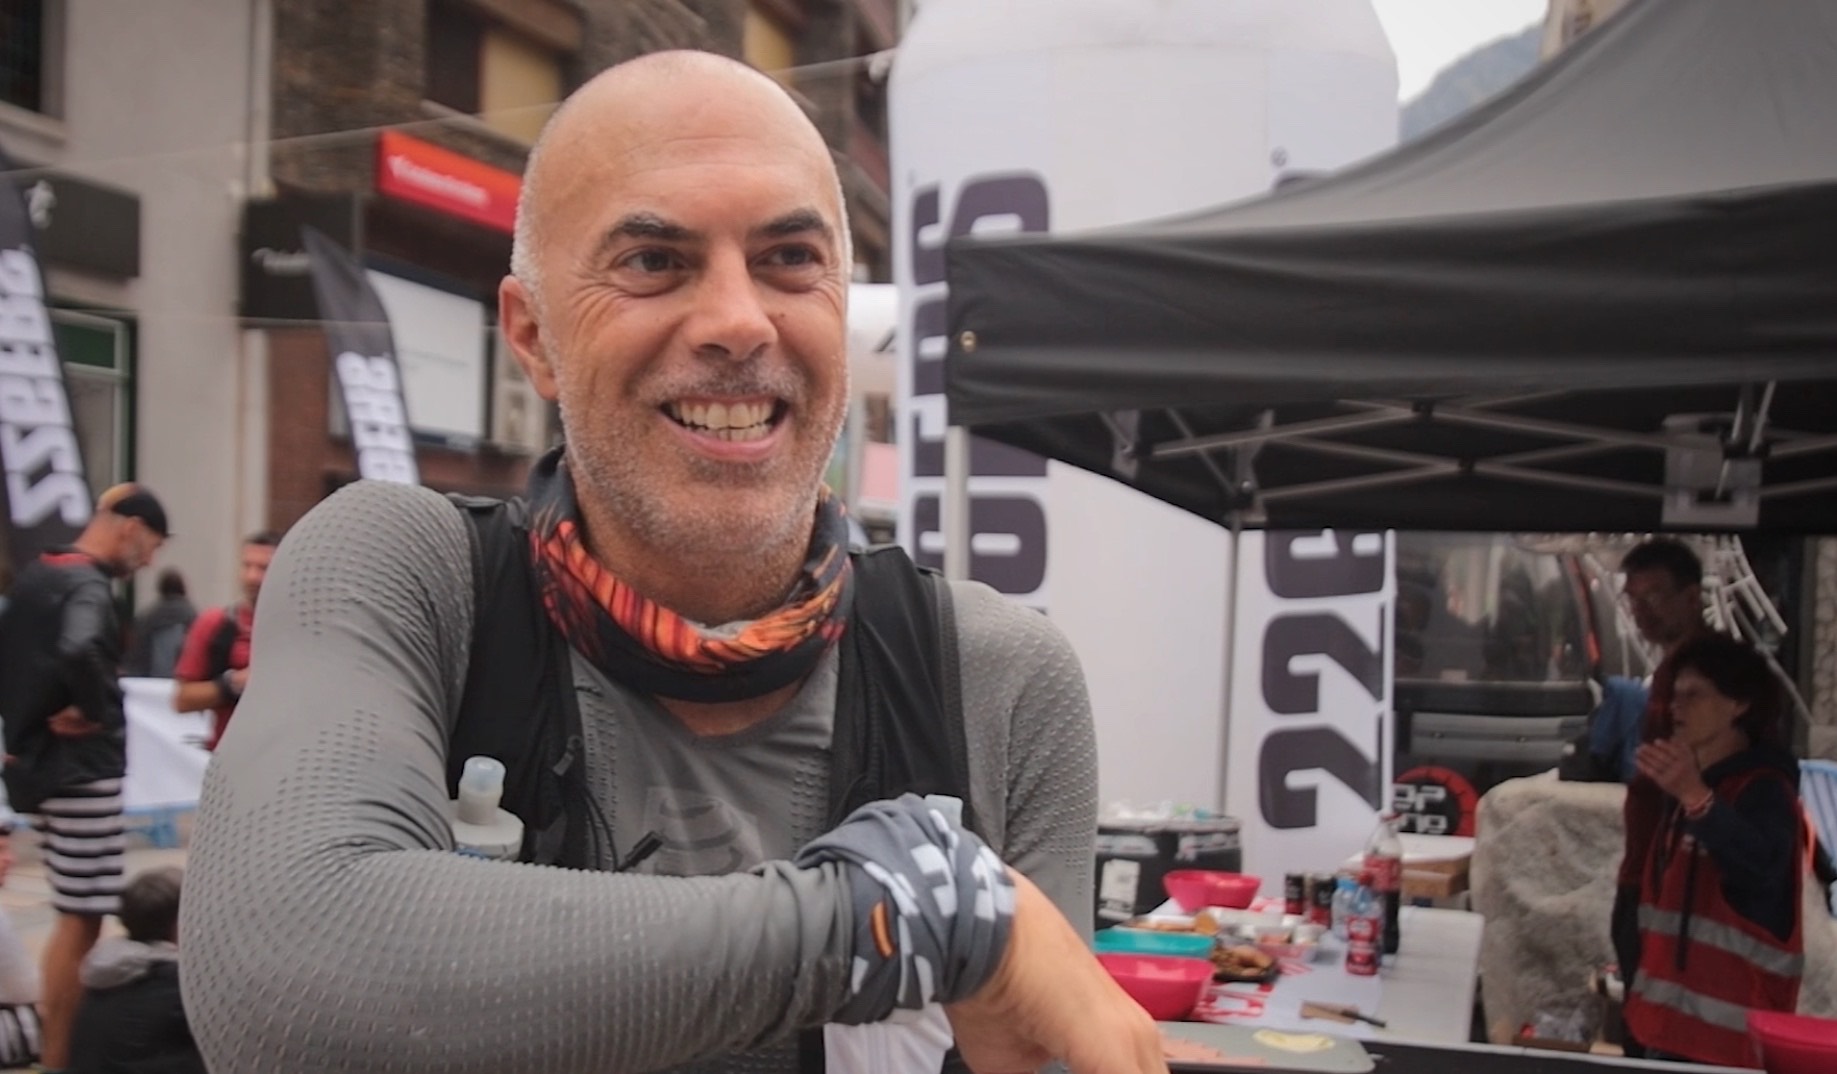 El corredor Dario Bas, sobre la trail running La Braibal d’Andorra: “En aquest paisatge és impossible estar malament”